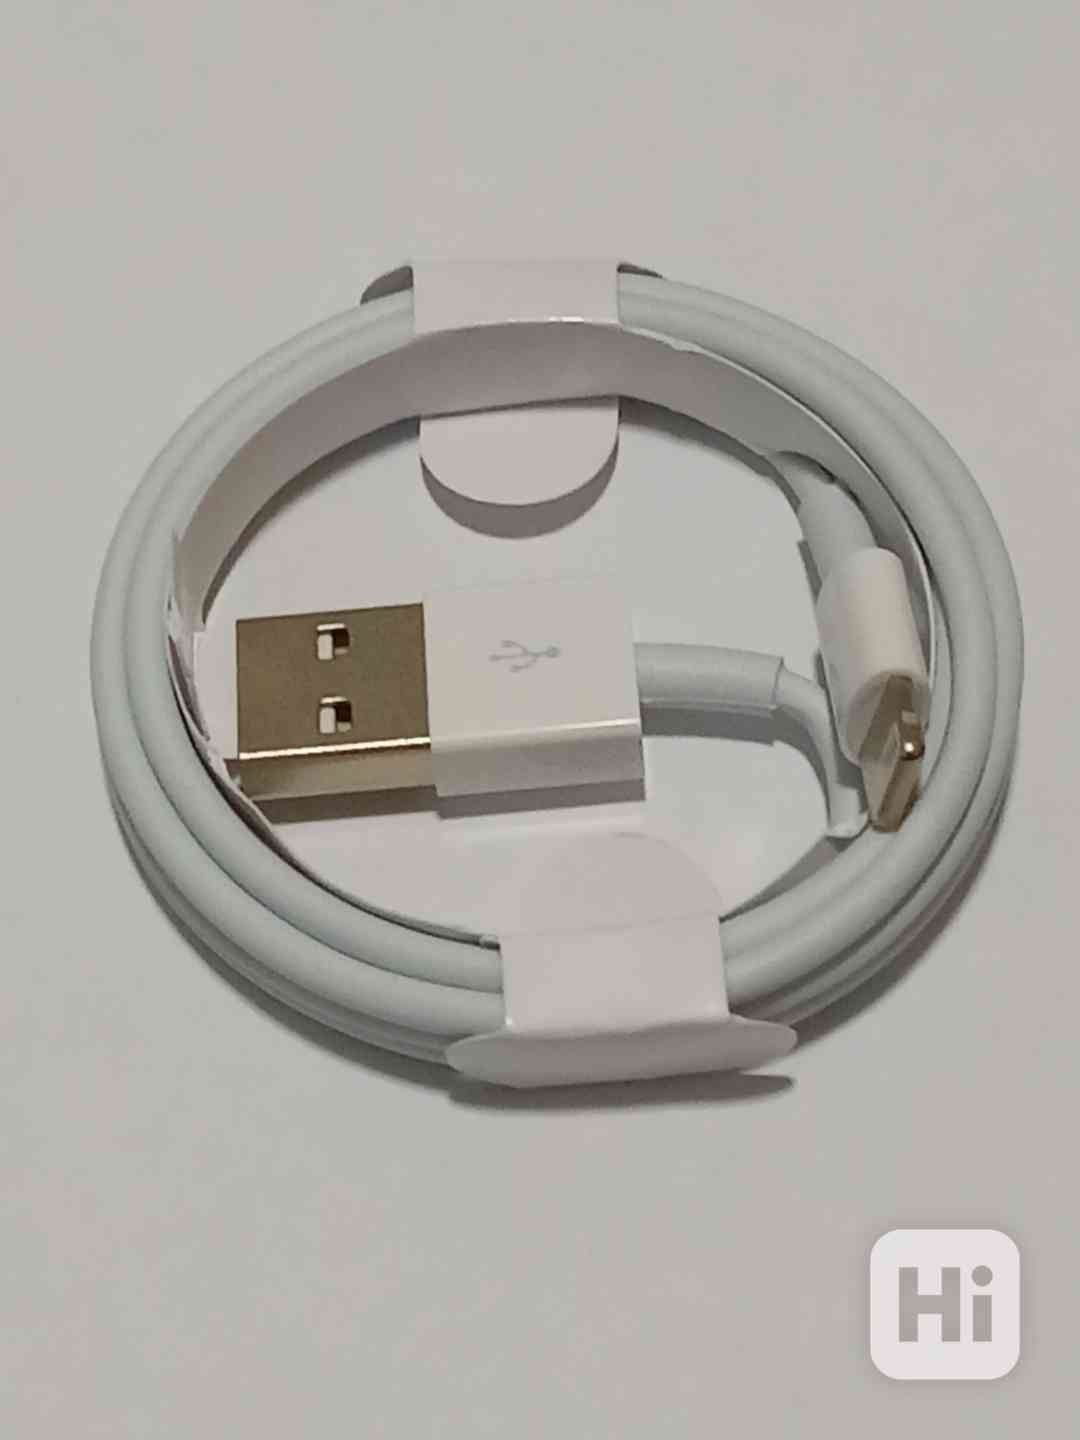 Nabíjecí kabel pro Apple iPhone (Lightning - USB) - foto 1